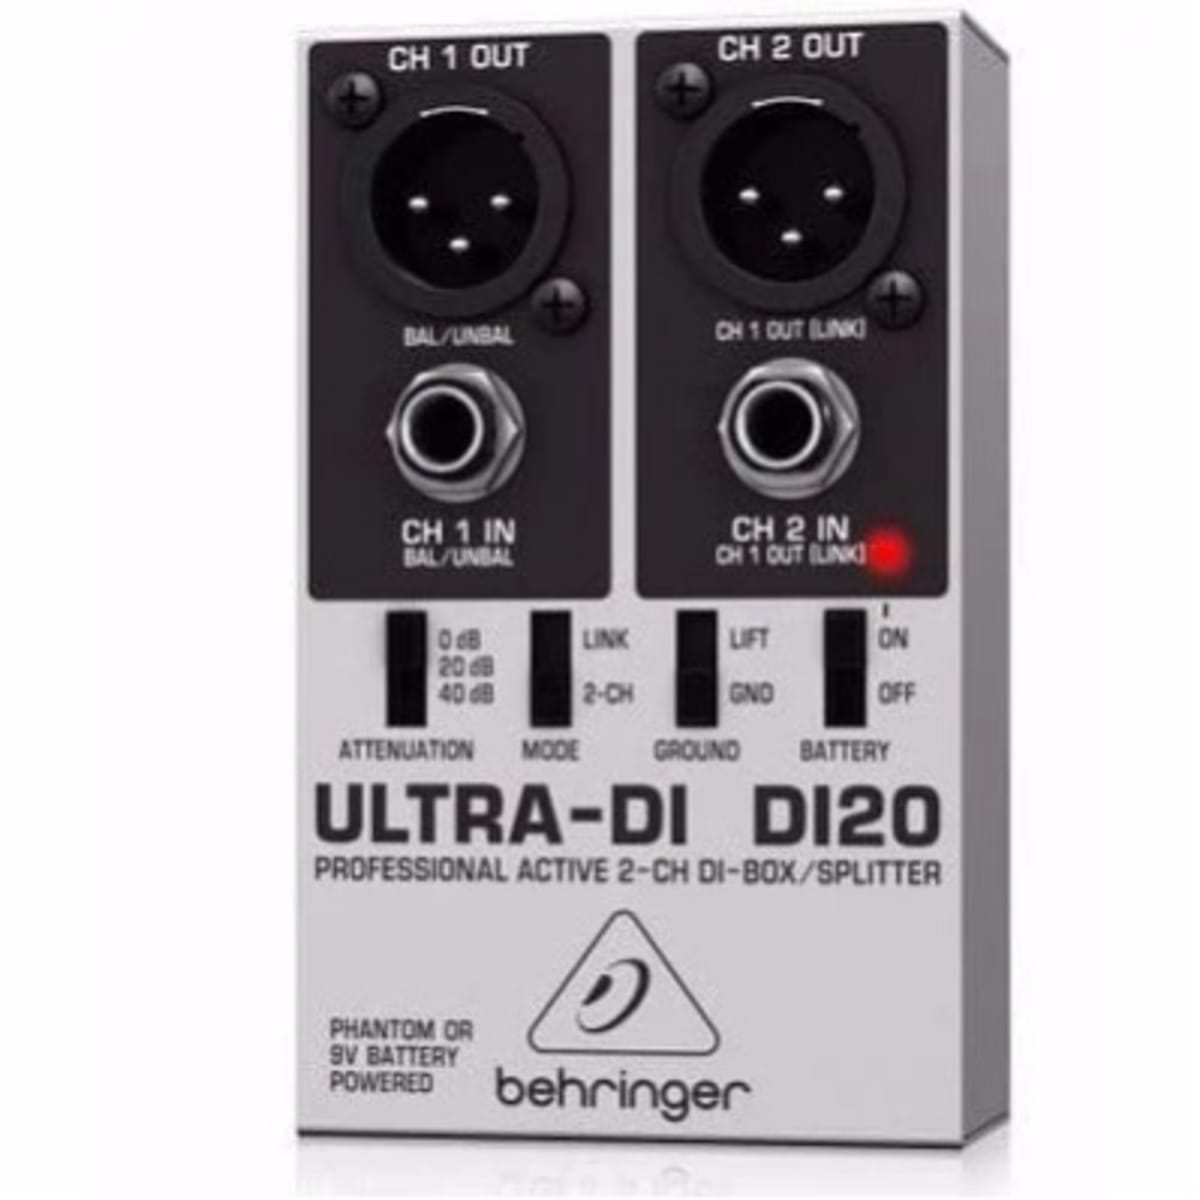 Behringer Ultra-di Di20 Professional Active 2-channel Di-box